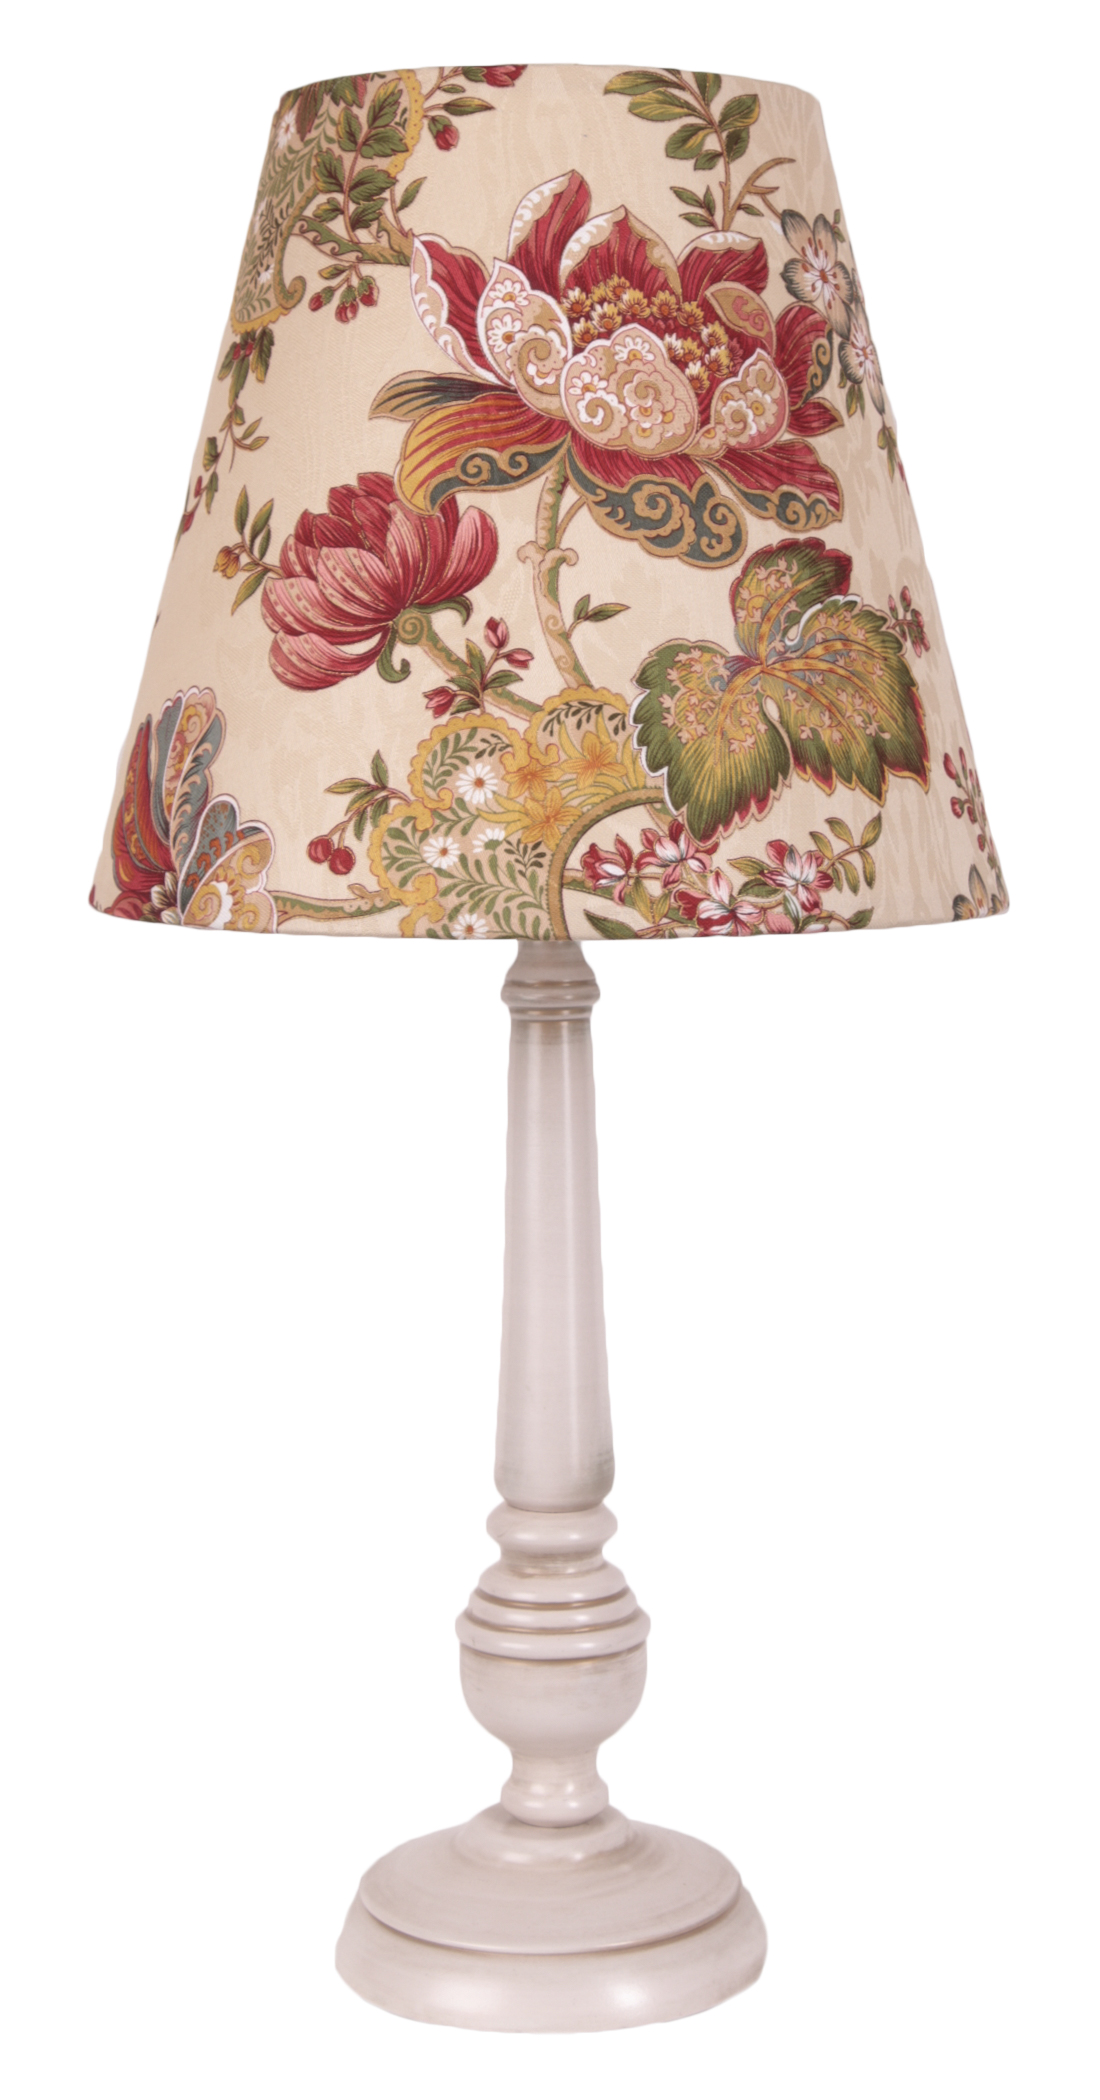 Лампы прованс. Настольная лампа Lumion Neoclassi Loraine 3733/1t. Ralph Lauren лампа настольная. Настольная лампа Прованс. Настольная лампа в стиле Прованс.